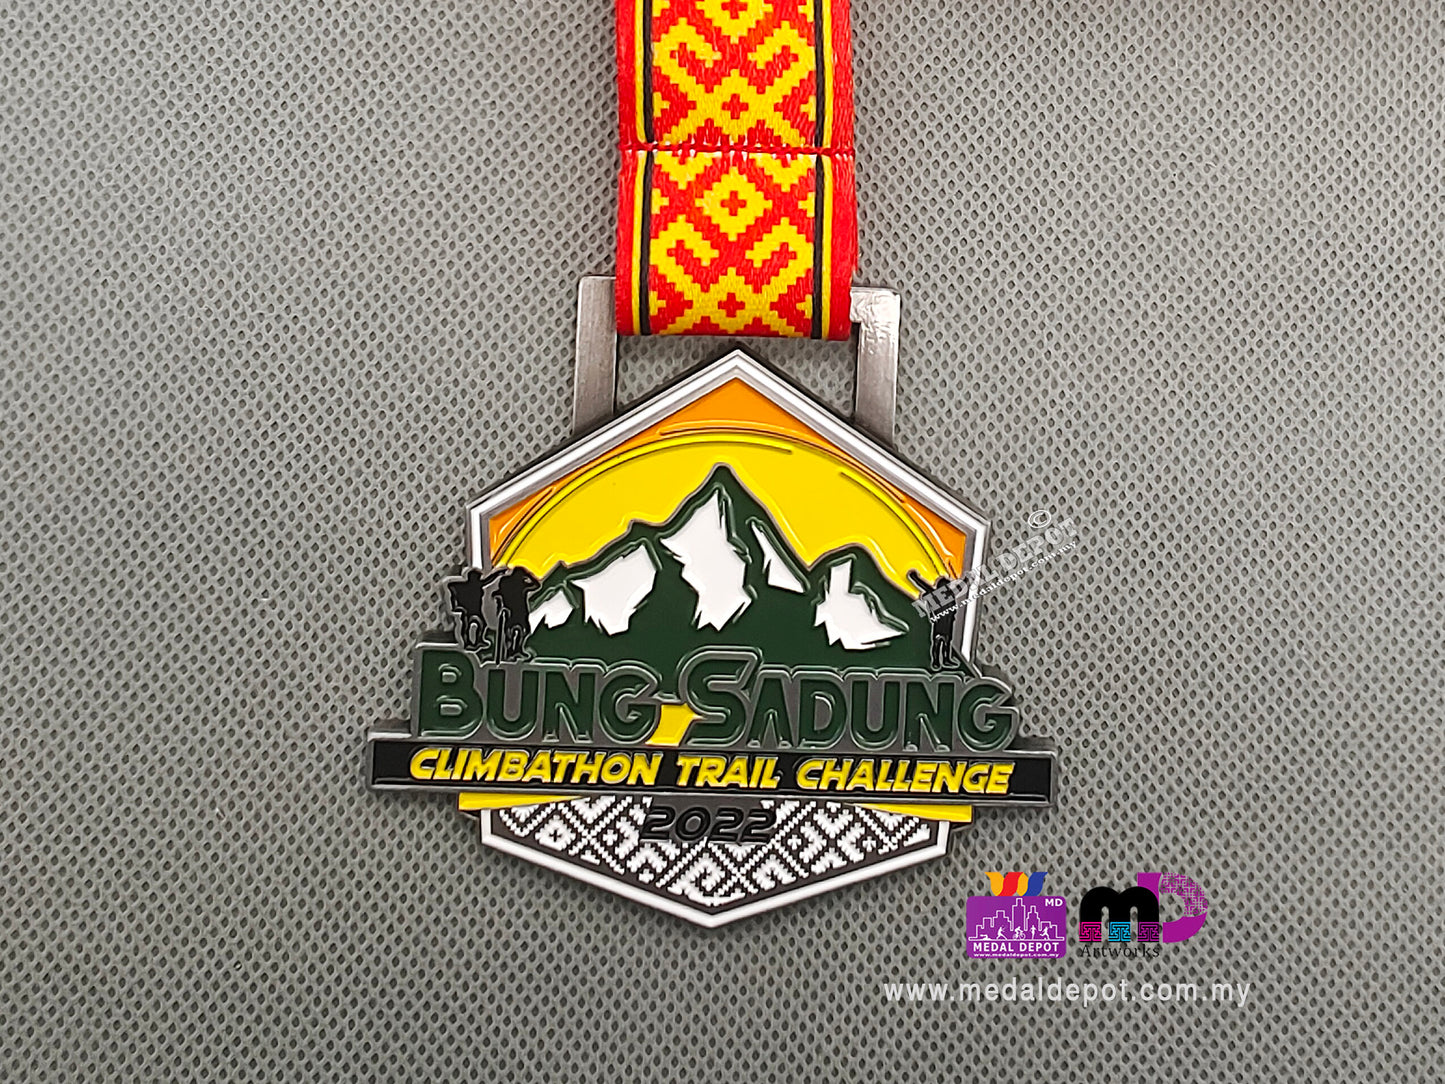 Bung Sadung Climbathon Trail Challenge 2022 medal